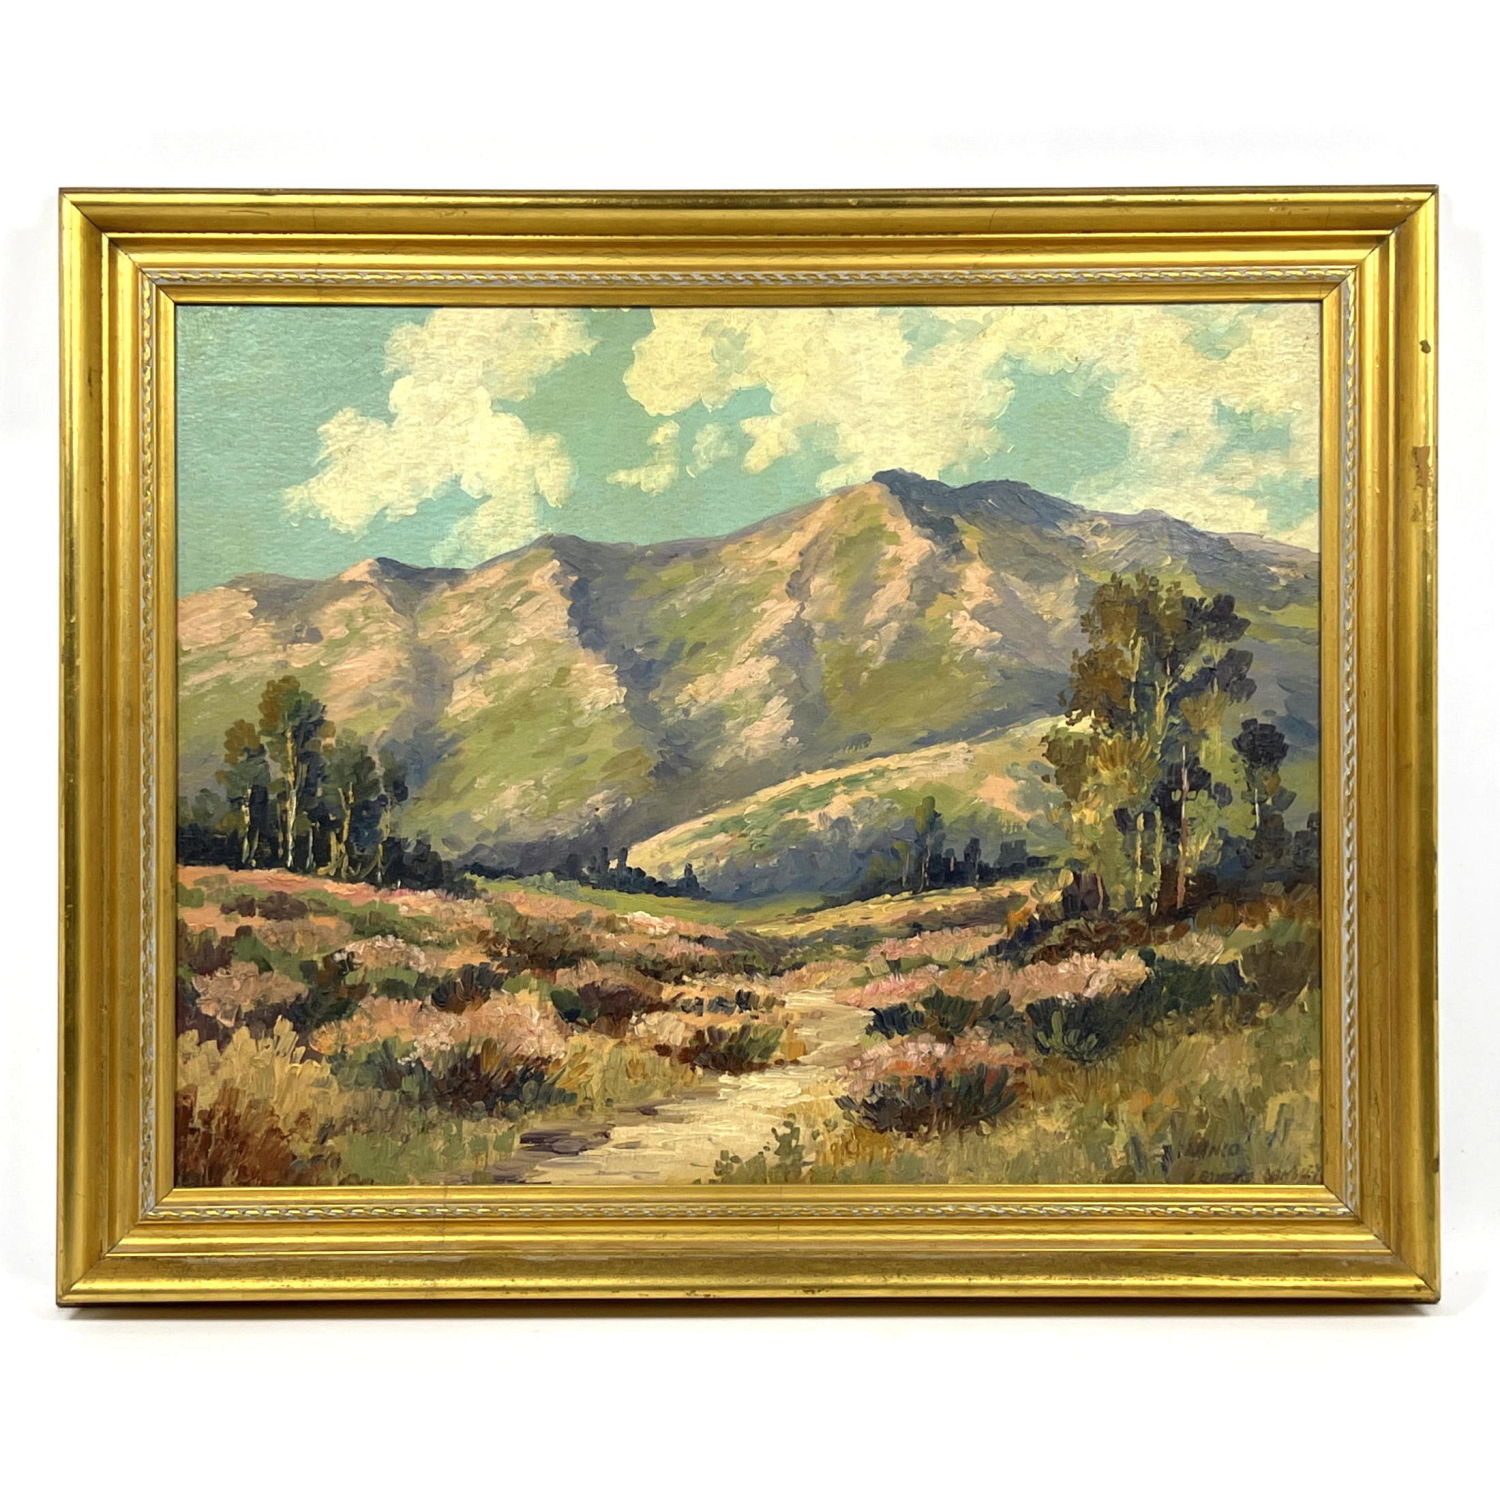 Signed Vintage Oil Landscape Painting.